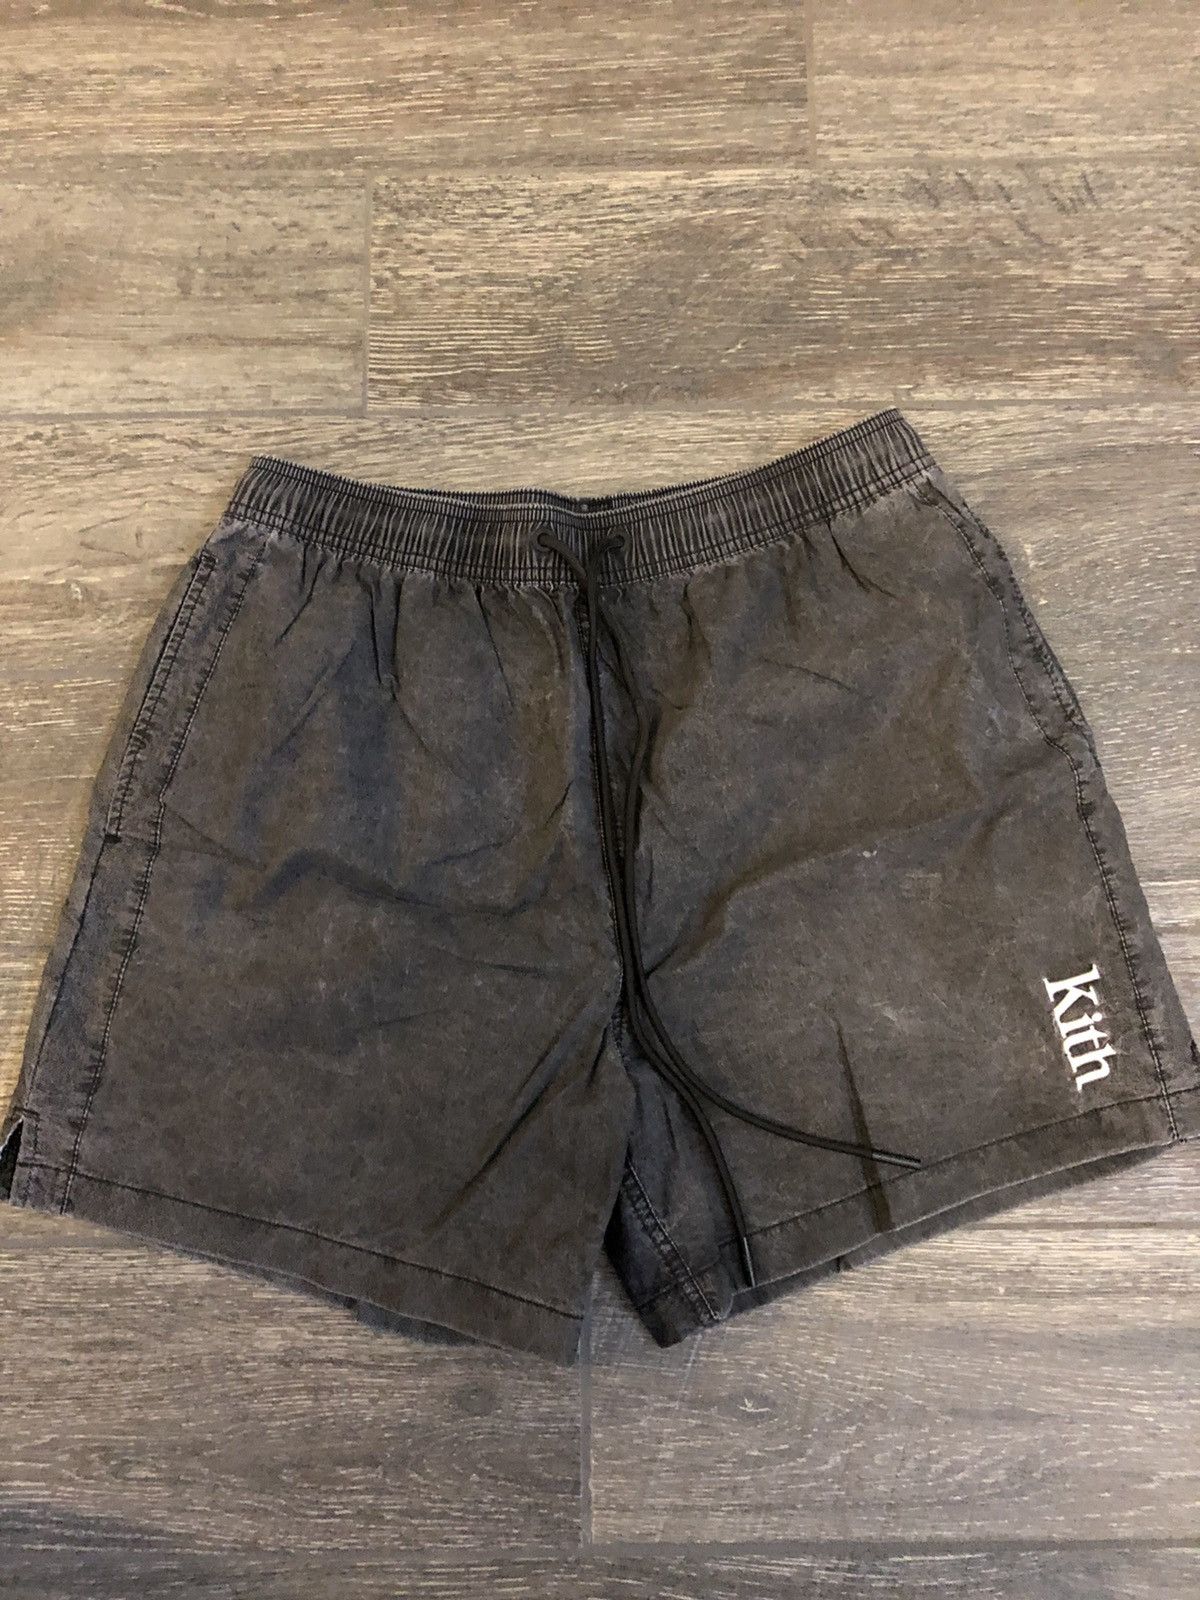 Kith Washed black nylon shorts | Grailed